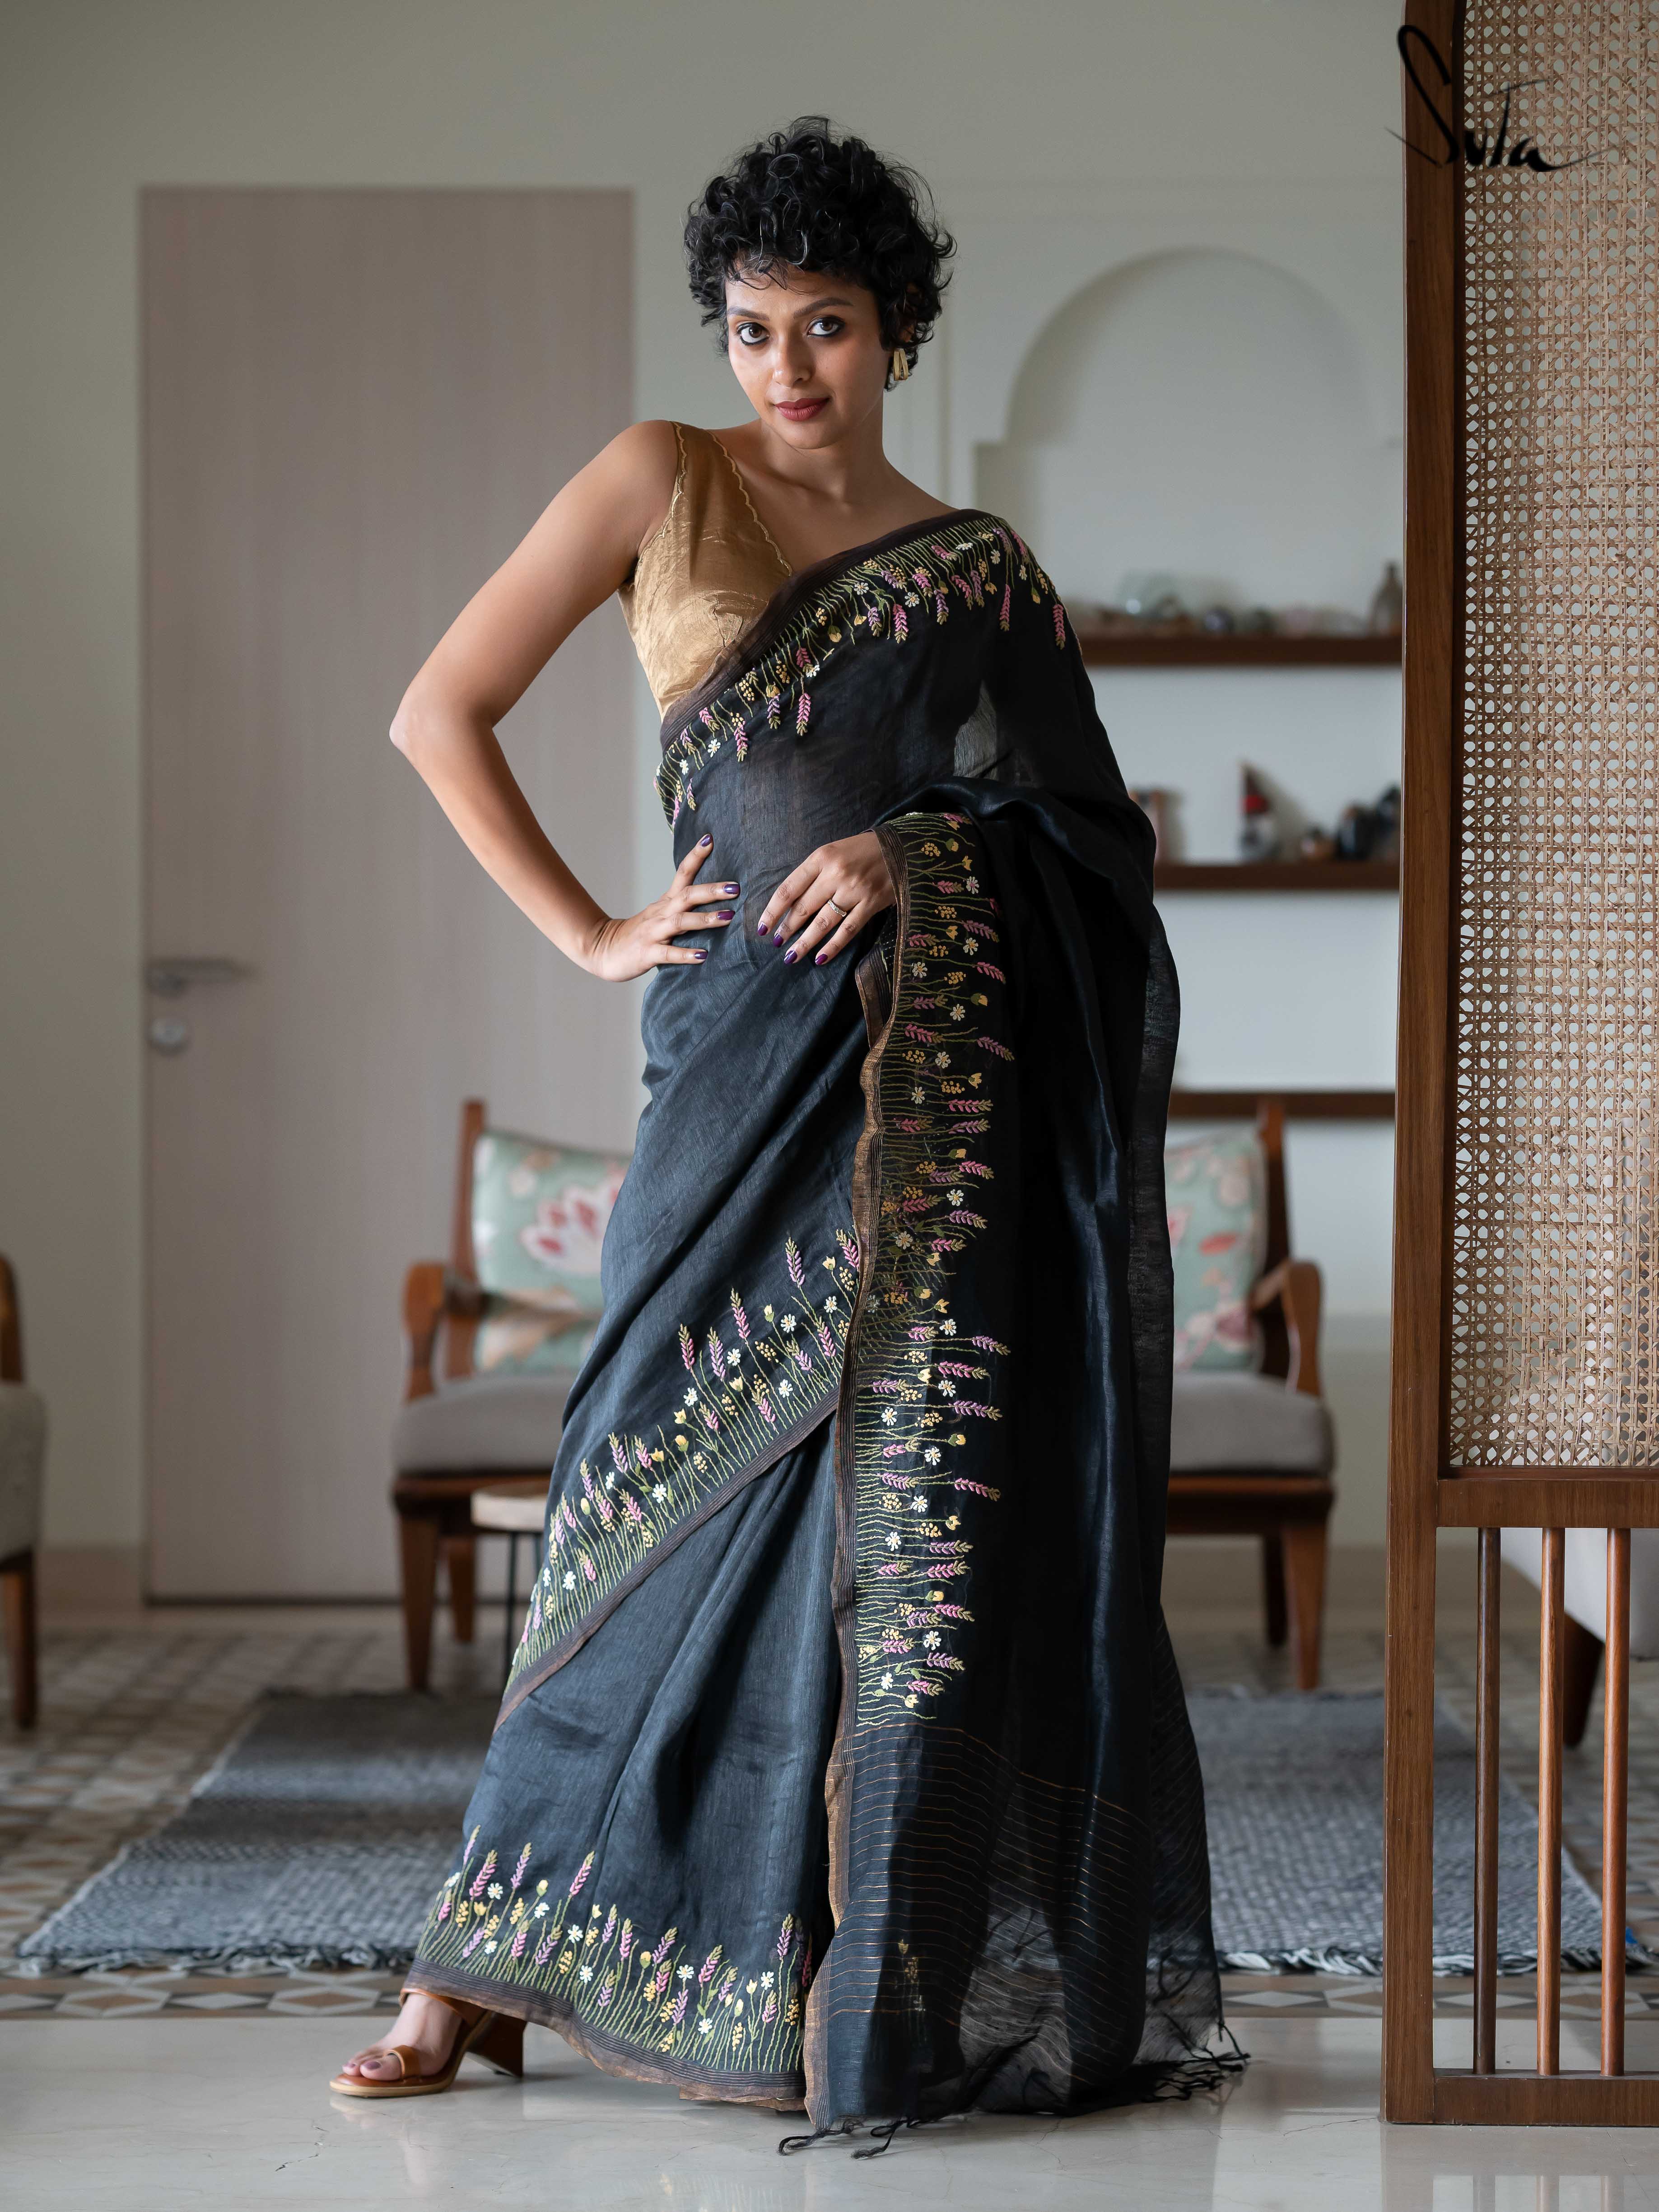 Farewell saree ideas | Satin saree, Indian outfits, Hot blouse